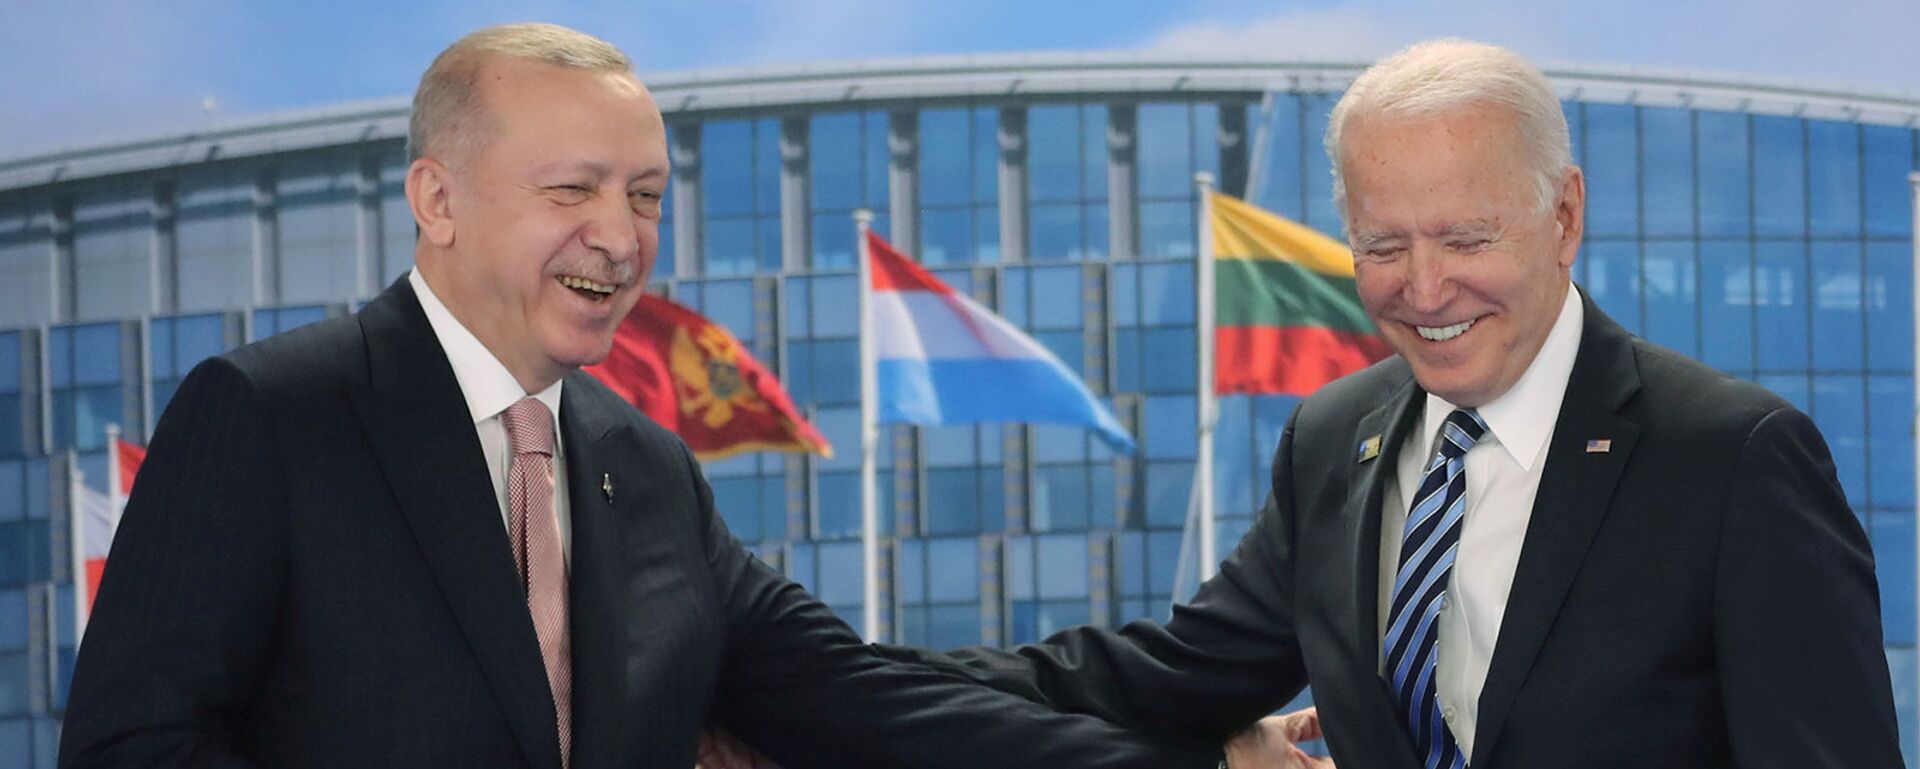 Президенты США и Турции Джо Байден и Реджеп Тайип Эрдоган на фоне флагов членов НАТО (14 июня 2021). Бельгия - Sputnik Армения, 1920, 31.10.2021